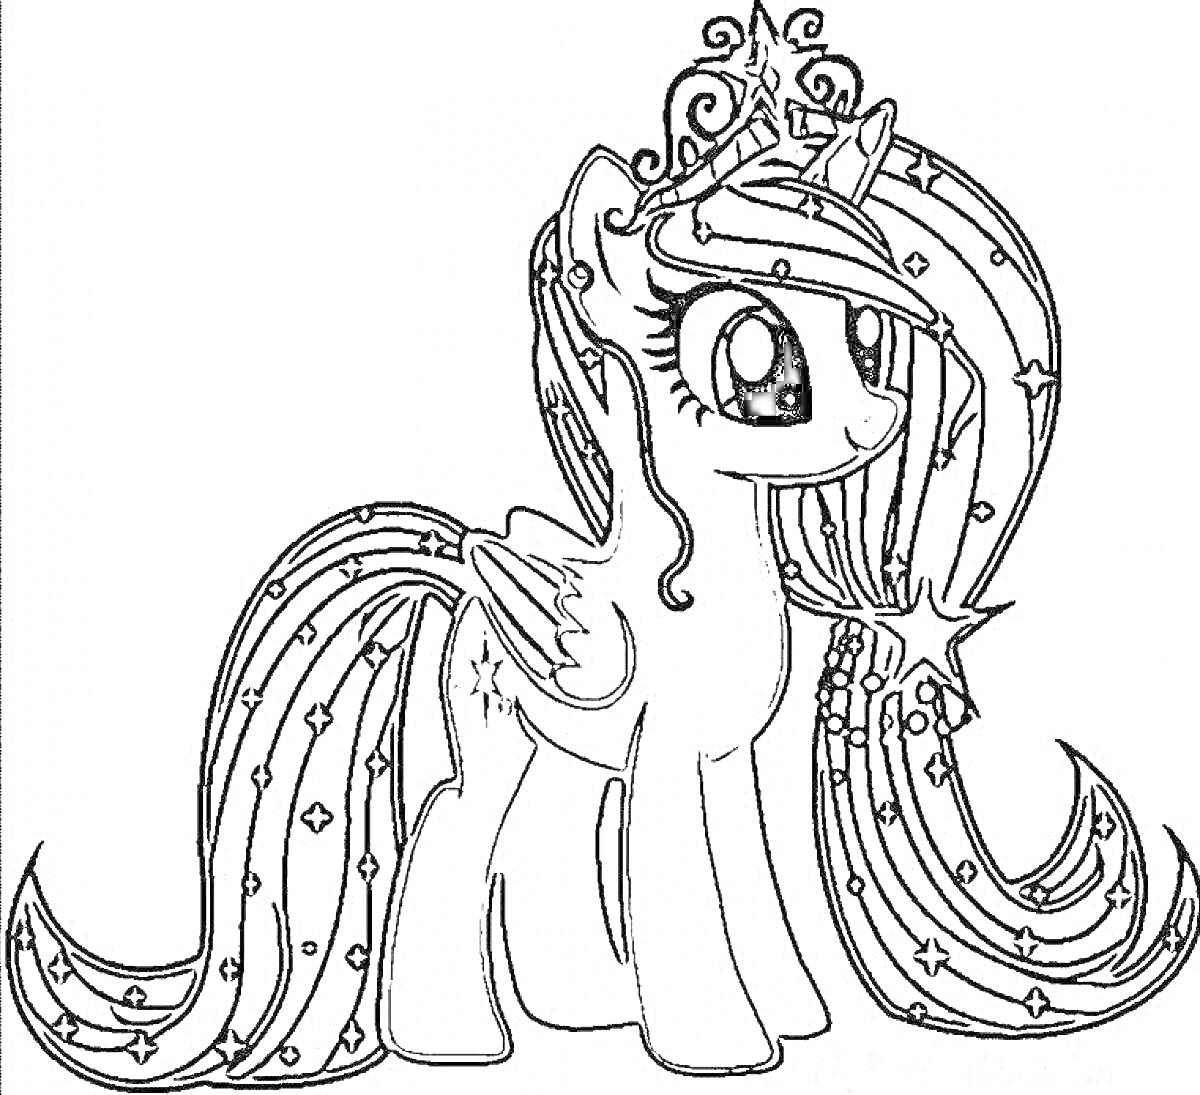 Раскраска Пони с крыльями и длинной гривой, украшенная корона и звезды